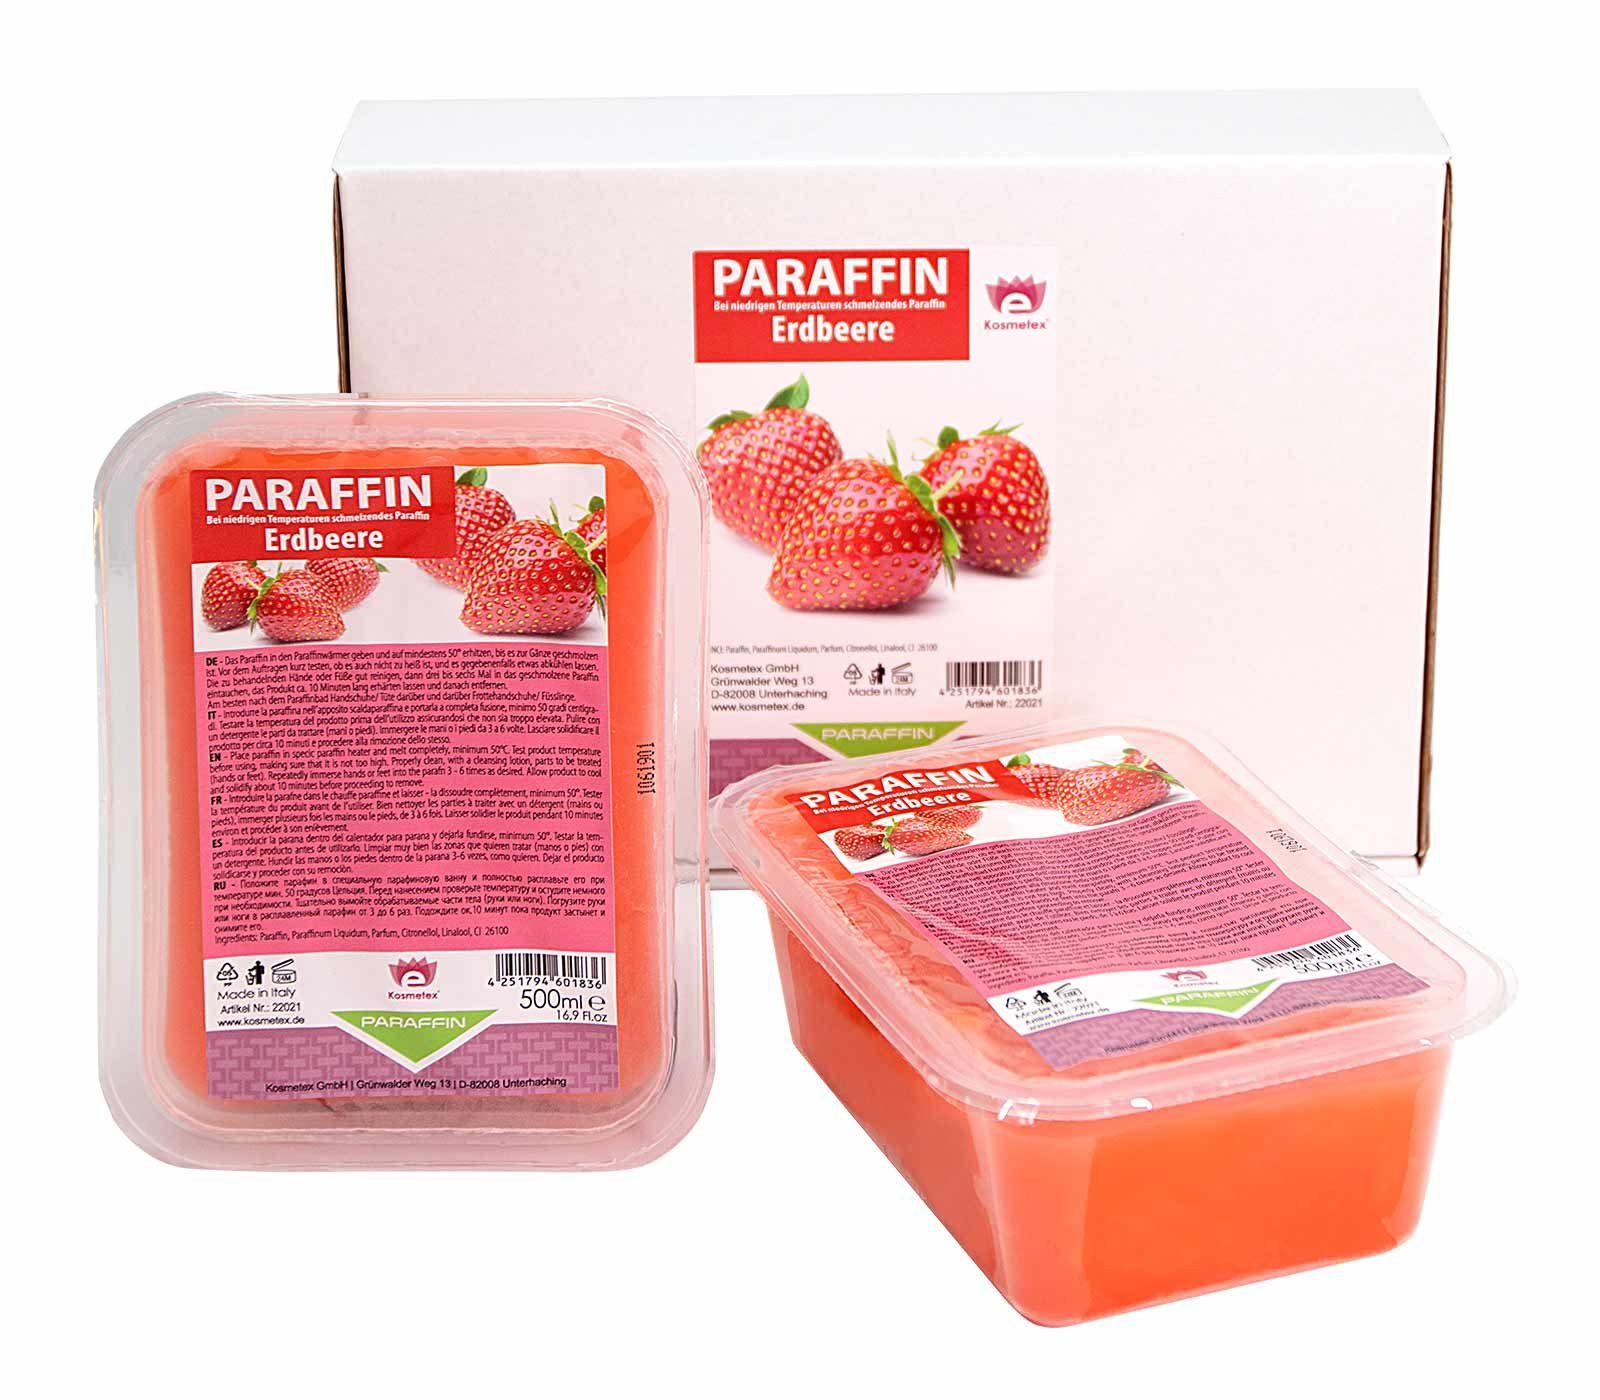 Kosmetex Kosmetex Paraffin Paraffinwachs Paraffinwachs für Paraffinbad Erdbeere,